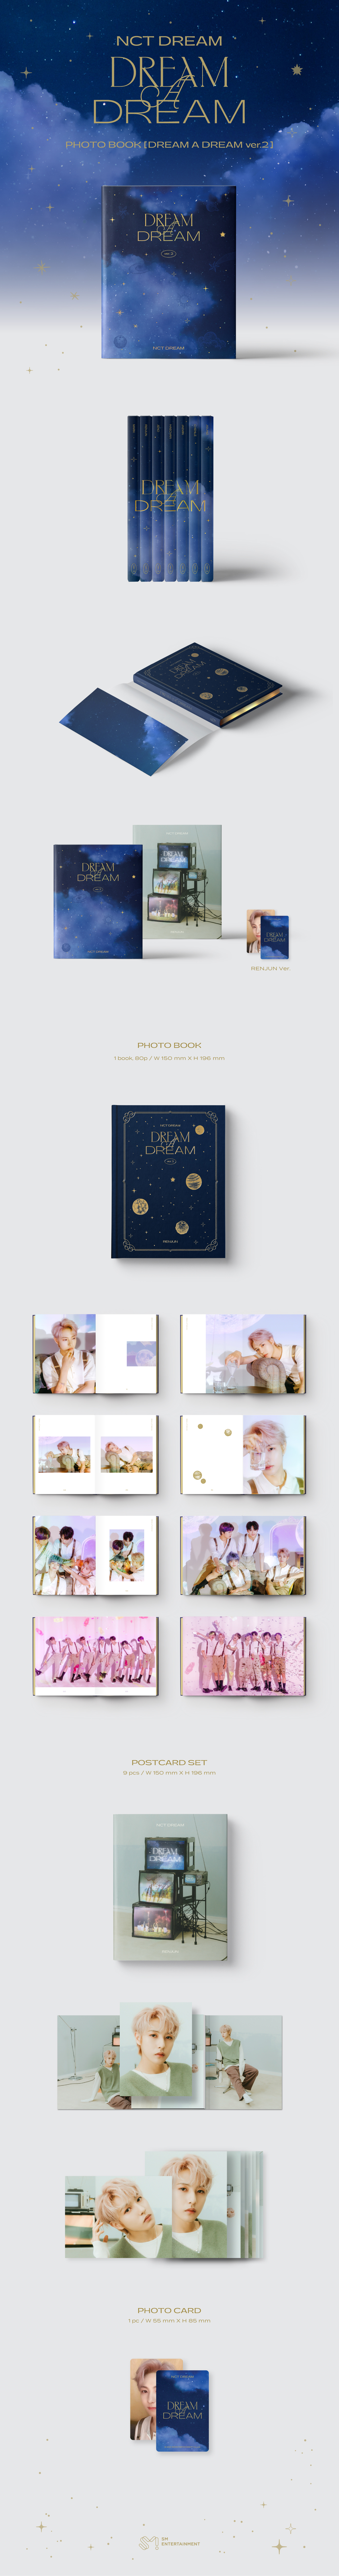 NCT DREAM 写真集 dream a dream トレカ付き - K-POP